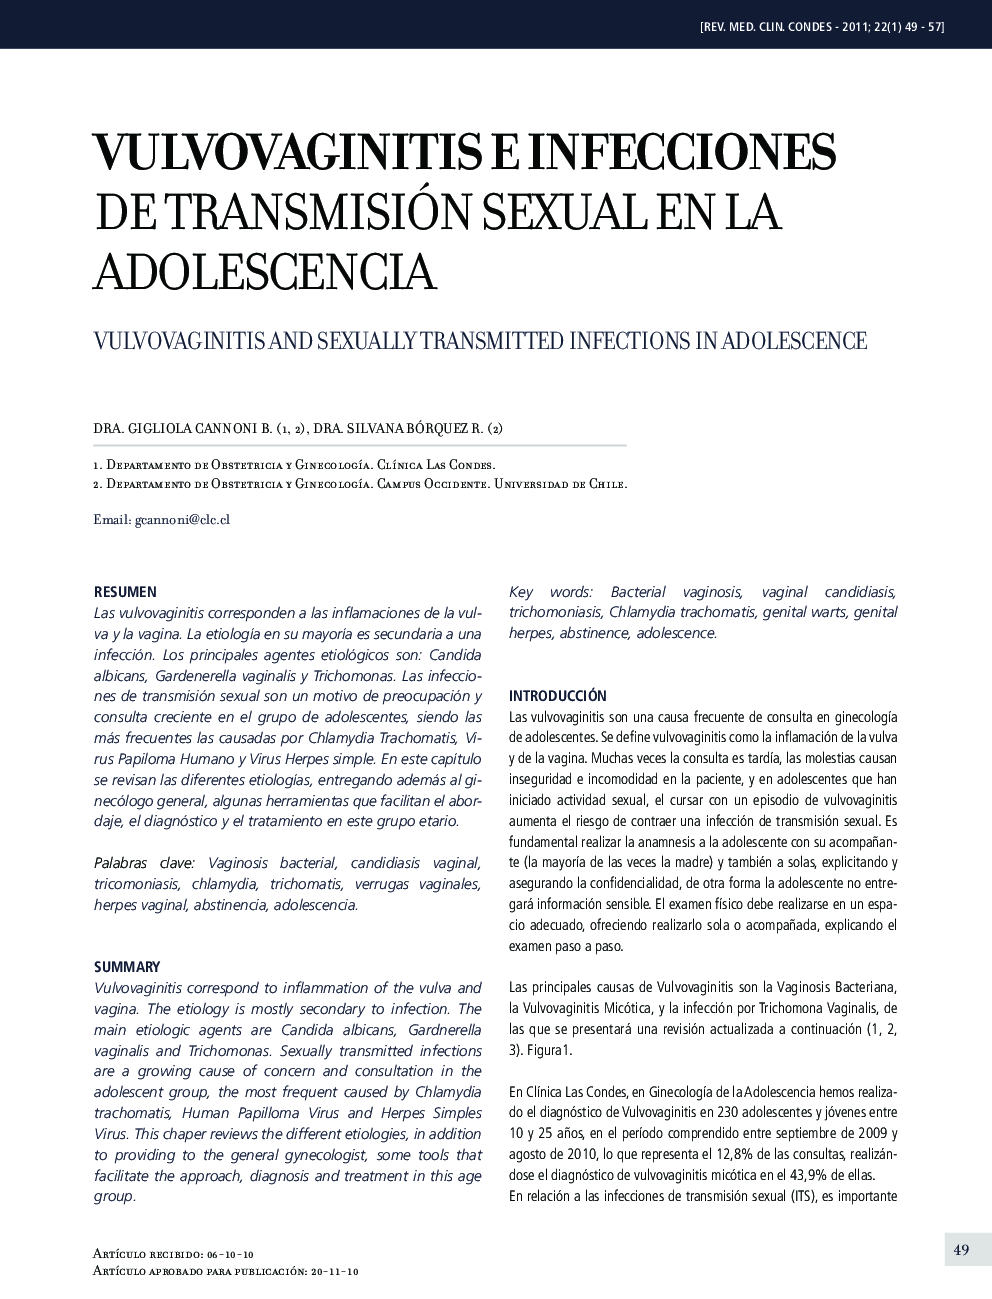 Vulvovaginitis e infecciones de transmisión sexual en la adolescencia